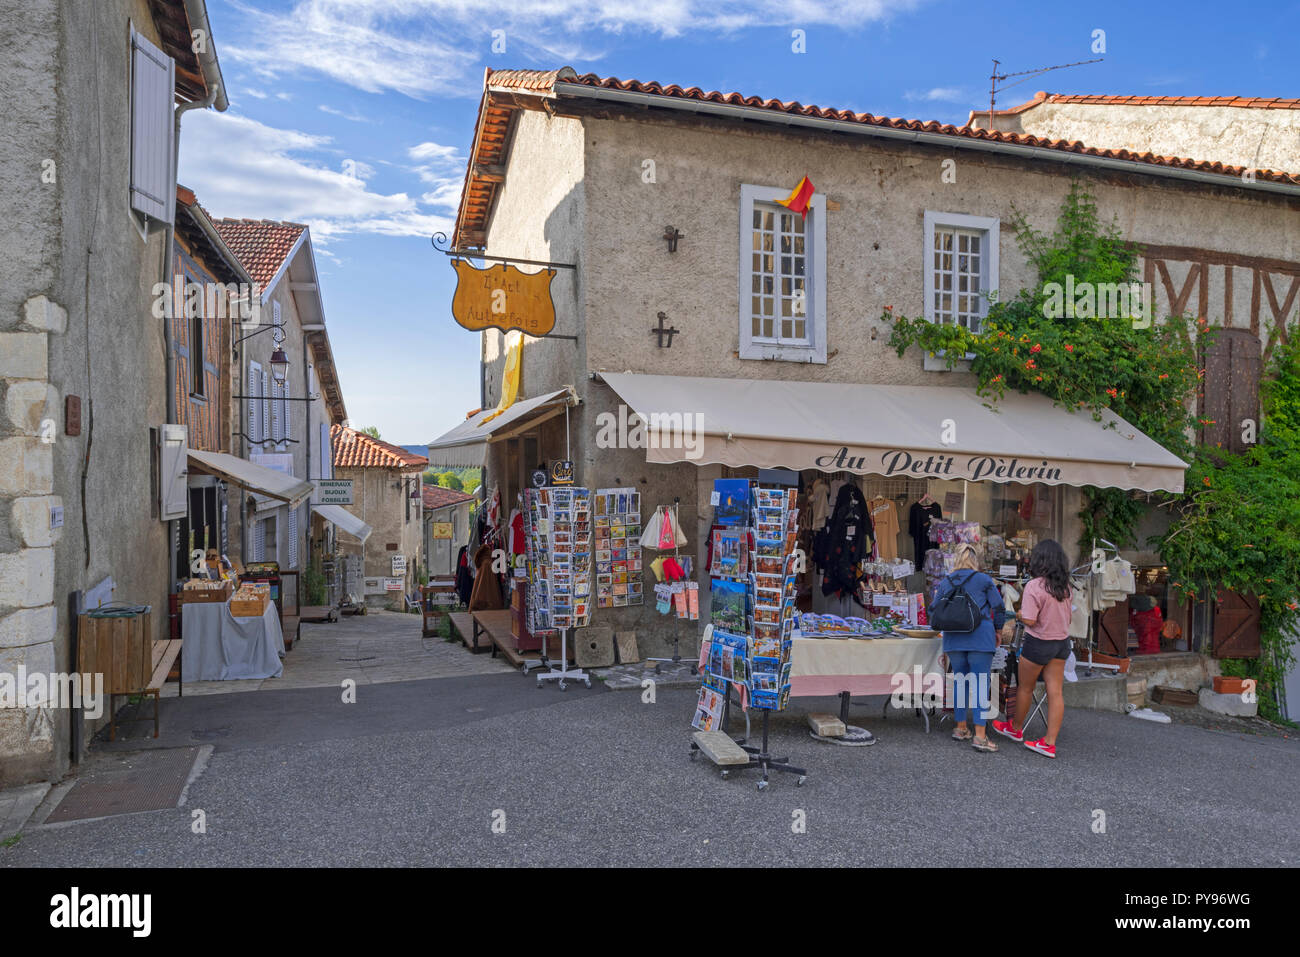 Tienda de souvenirs en el pueblo medieval de Saint-Bertrand-de-Comminges, Haute-Garonne, Pirineos, Francia Foto de stock